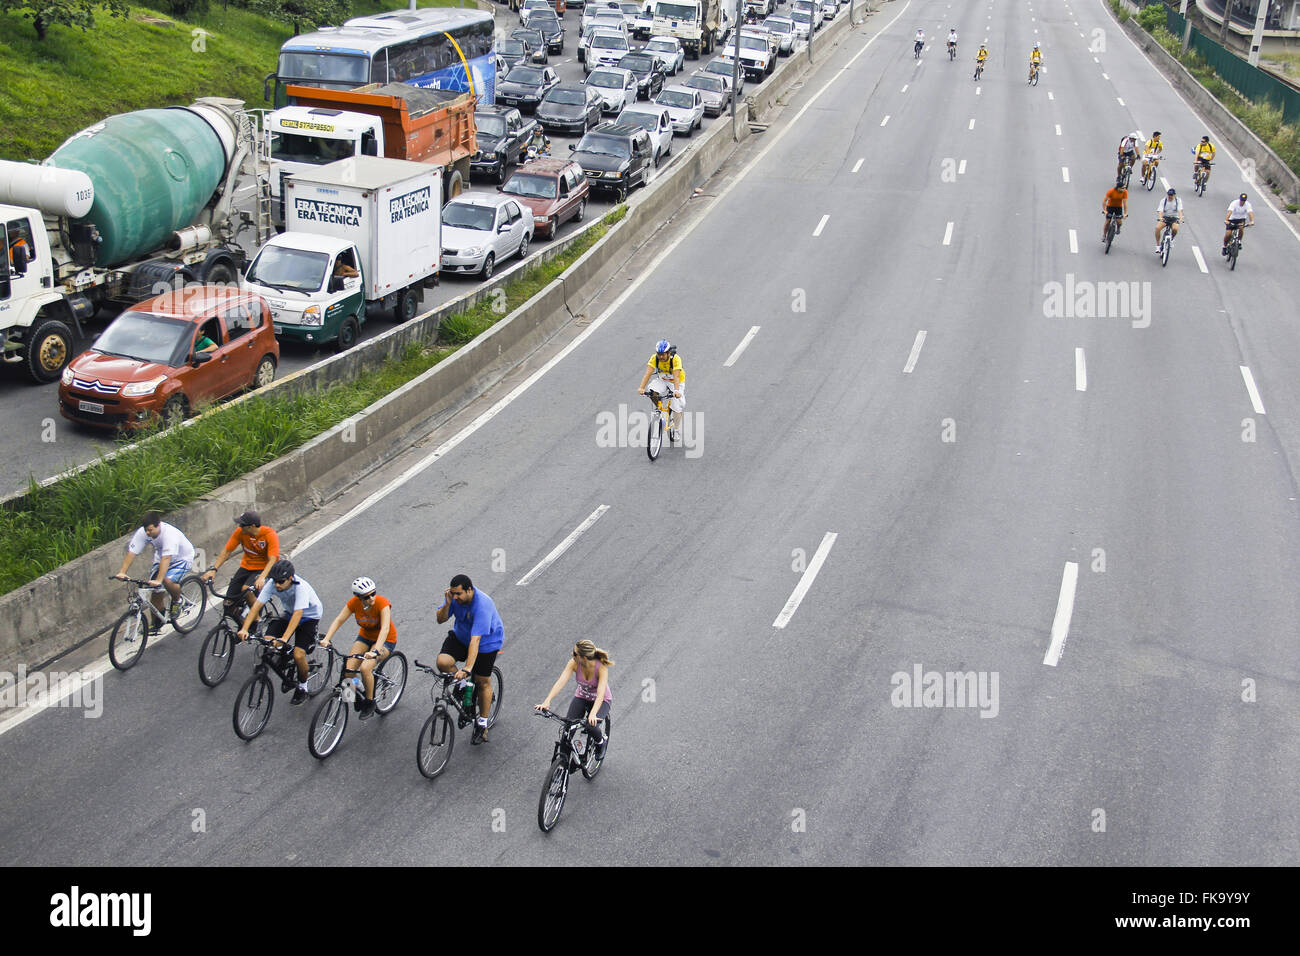 World Tour en Bicicleta - bicicleta durante la conmemoración del aniversario de la ciudad - 459 años Foto de stock